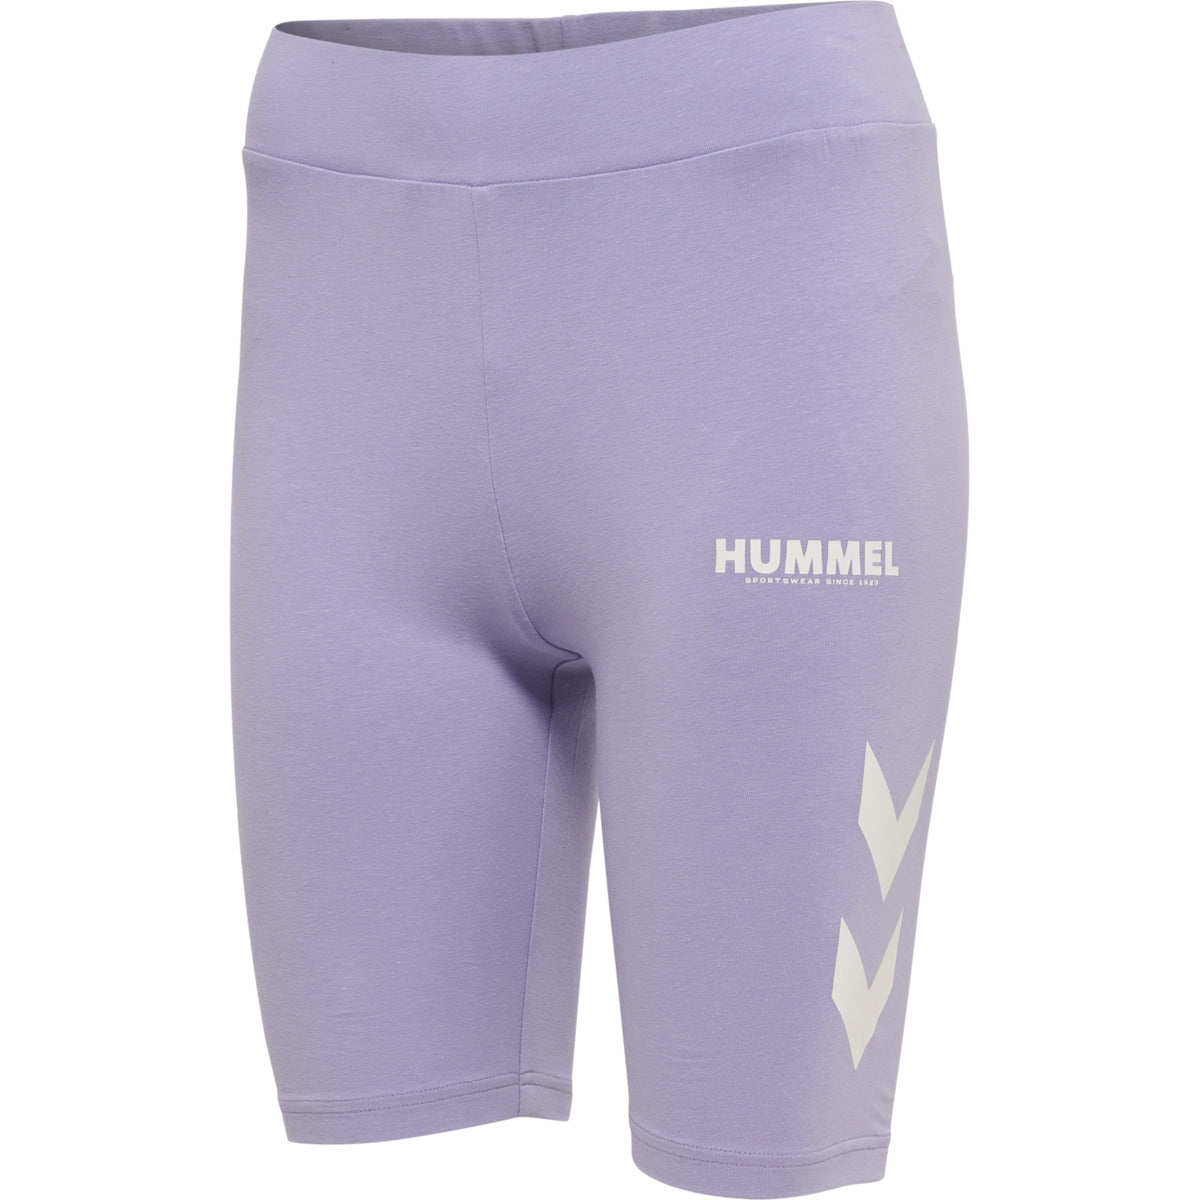 Billede af Hummel Wmn Legacy Tight Shorts - Pastel Lilac hos Muscle House